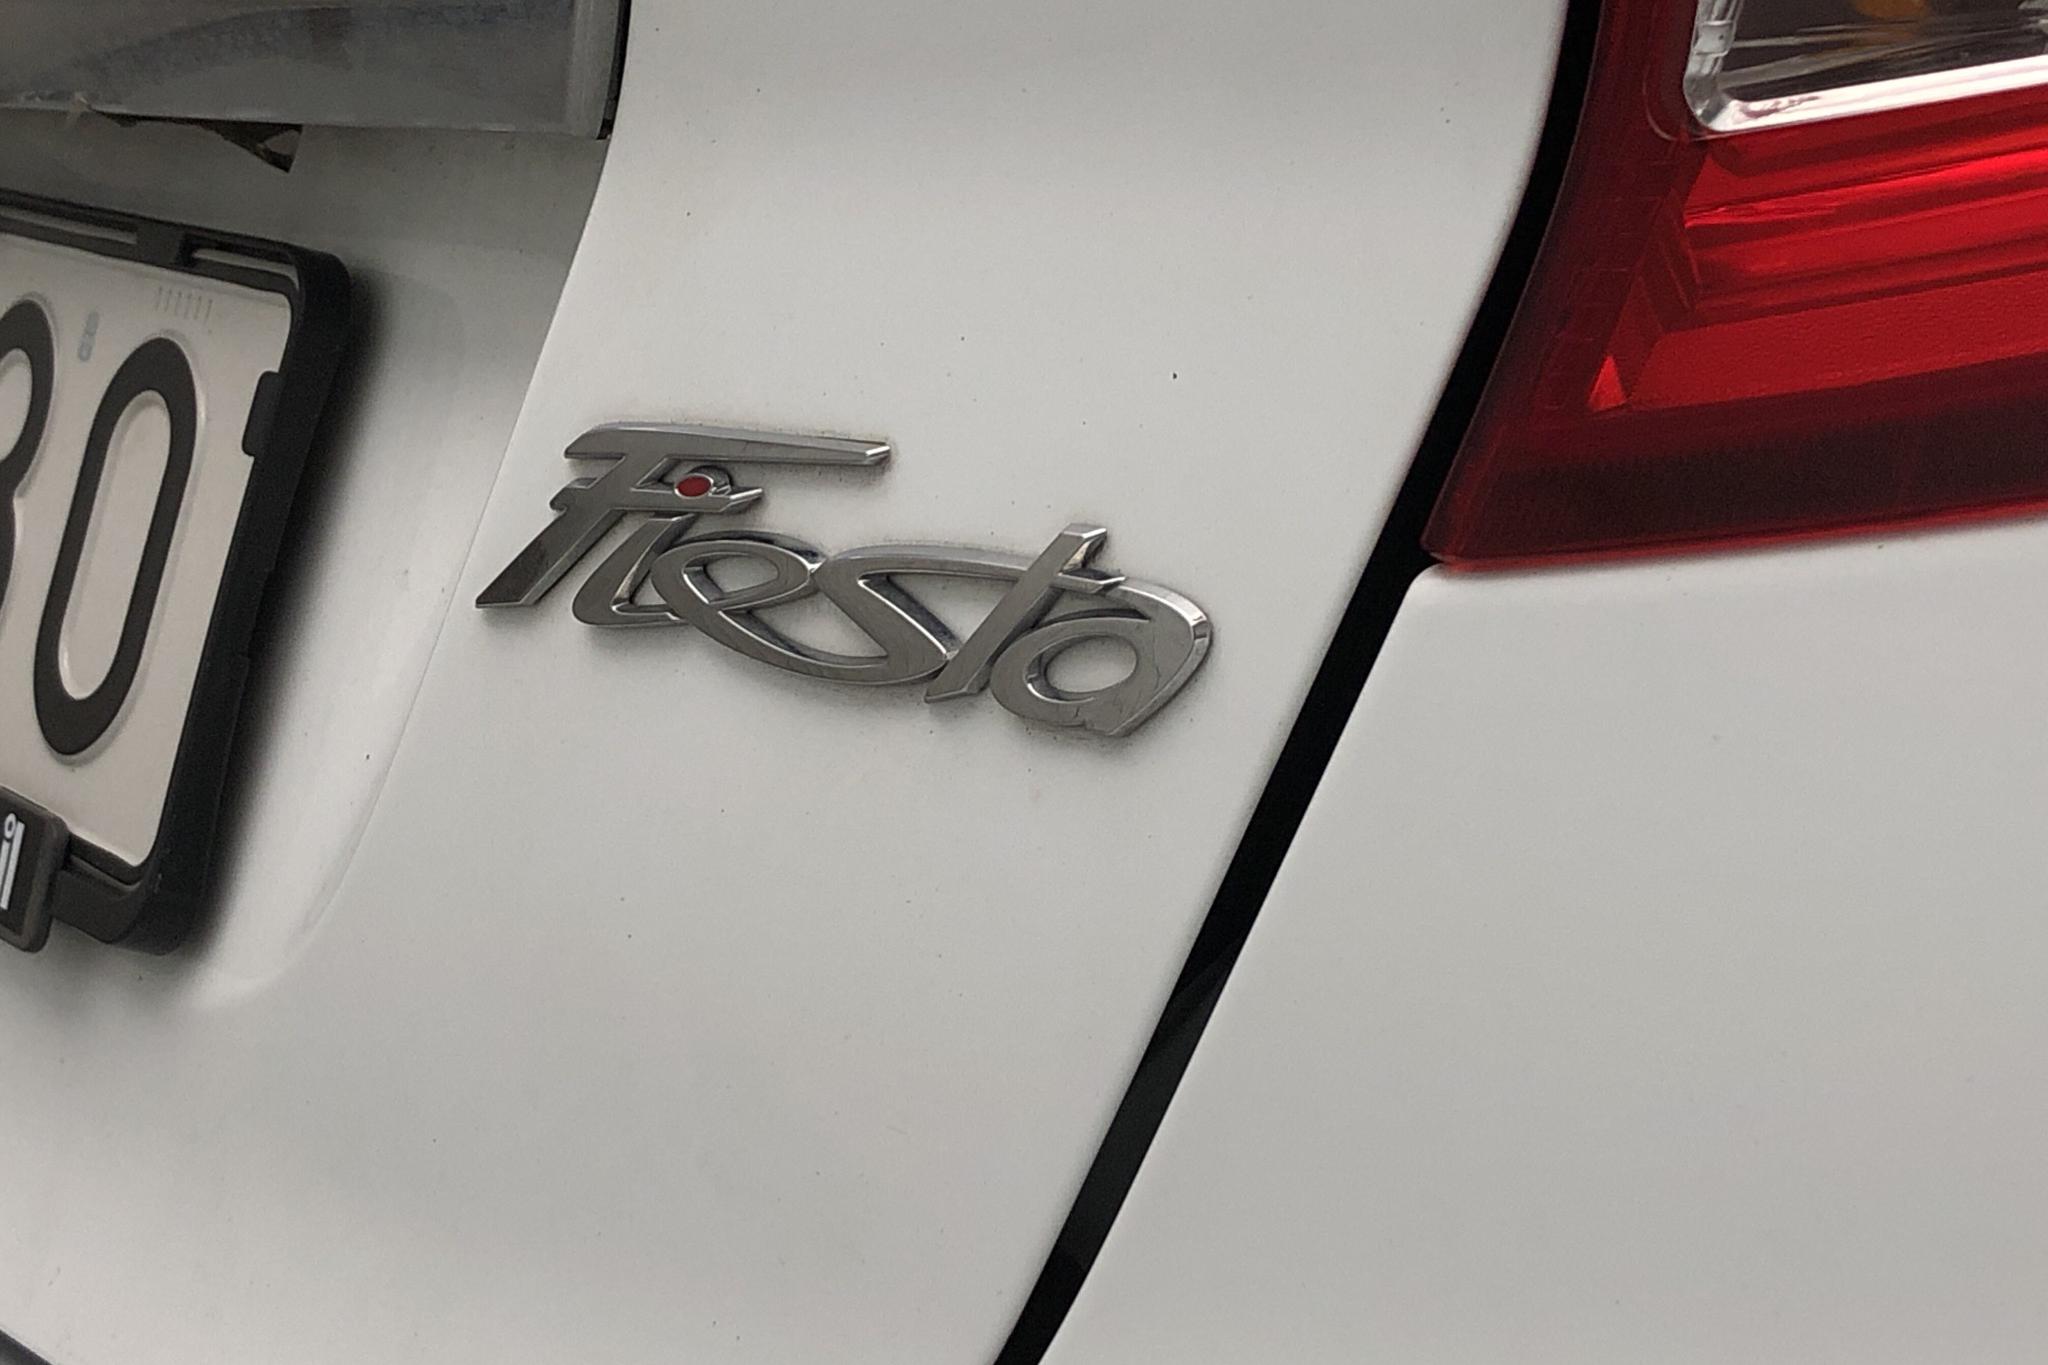 Ford Fiesta 1.25 5dr (82hk) - 3 502 mil - Manuell - vit - 2012